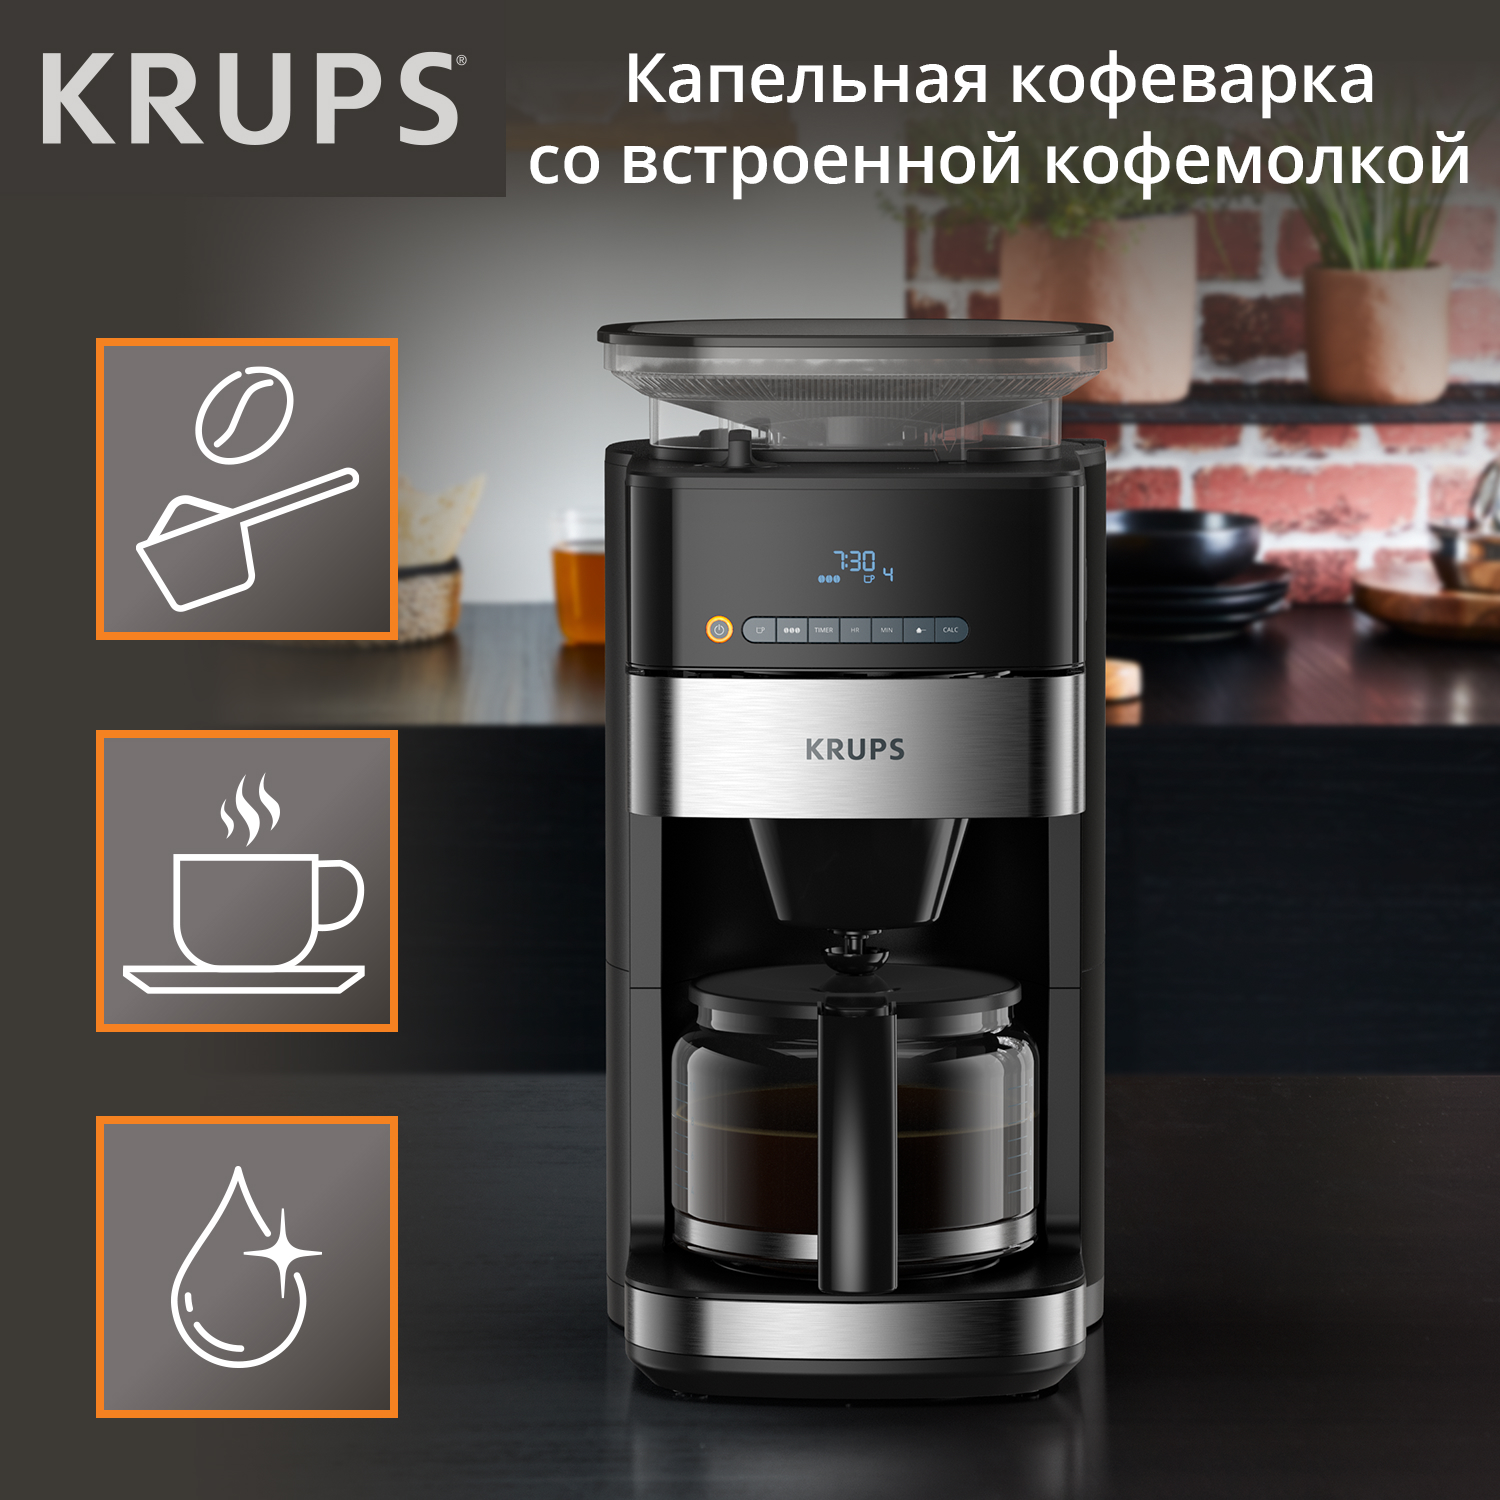 Кофеварка капельного типа Krups Grind Aroma KM832810 с кофемолкой, черный/серебристый рожковая кофеварка xp444c10 с кофемолкой krups fast touch gx204d10